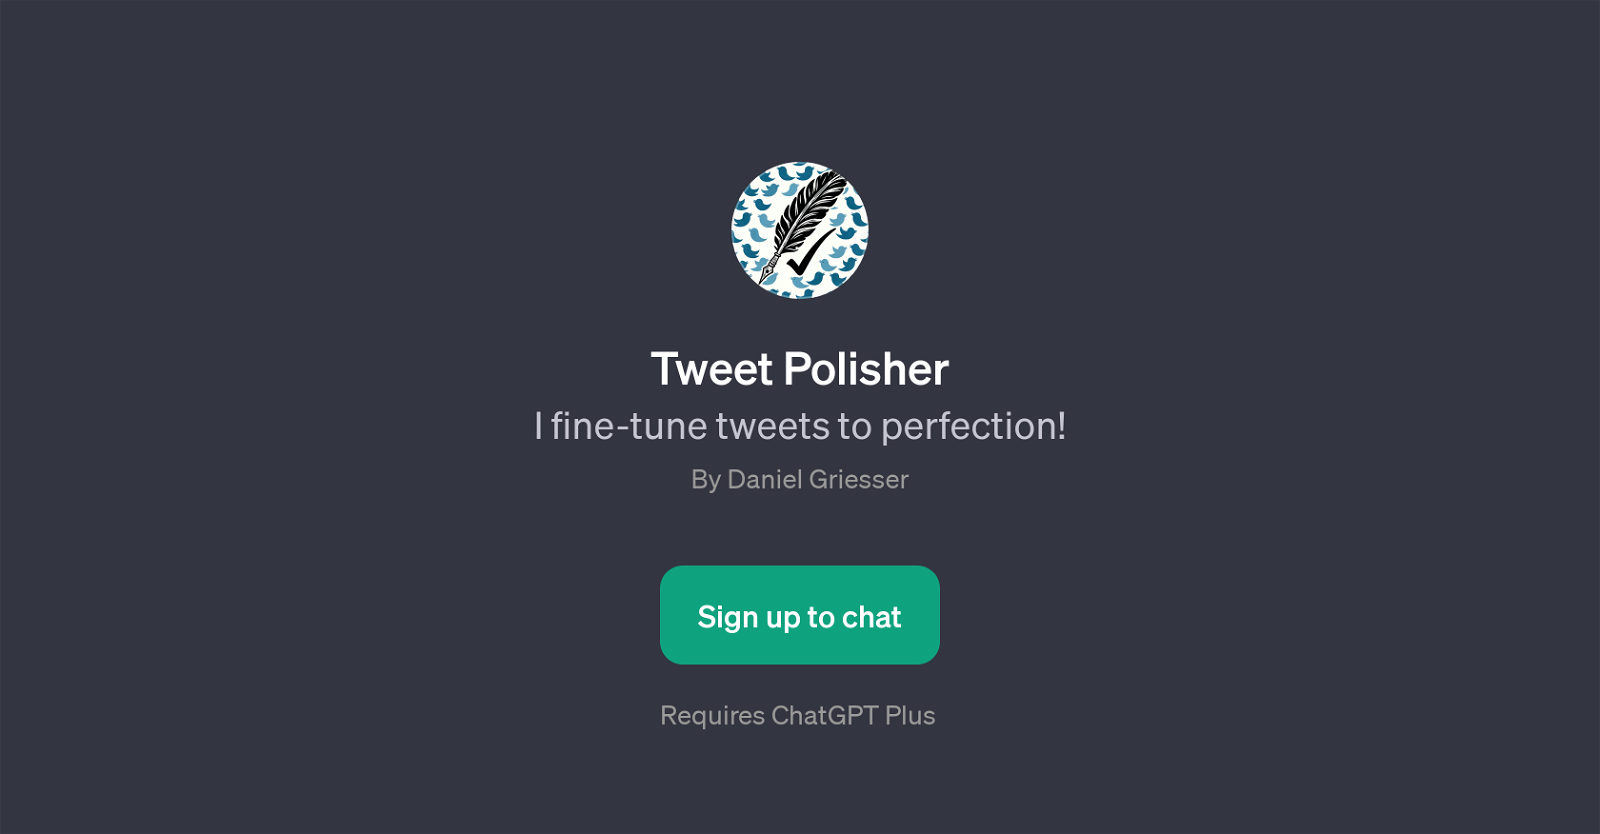 Tweet Polisher website